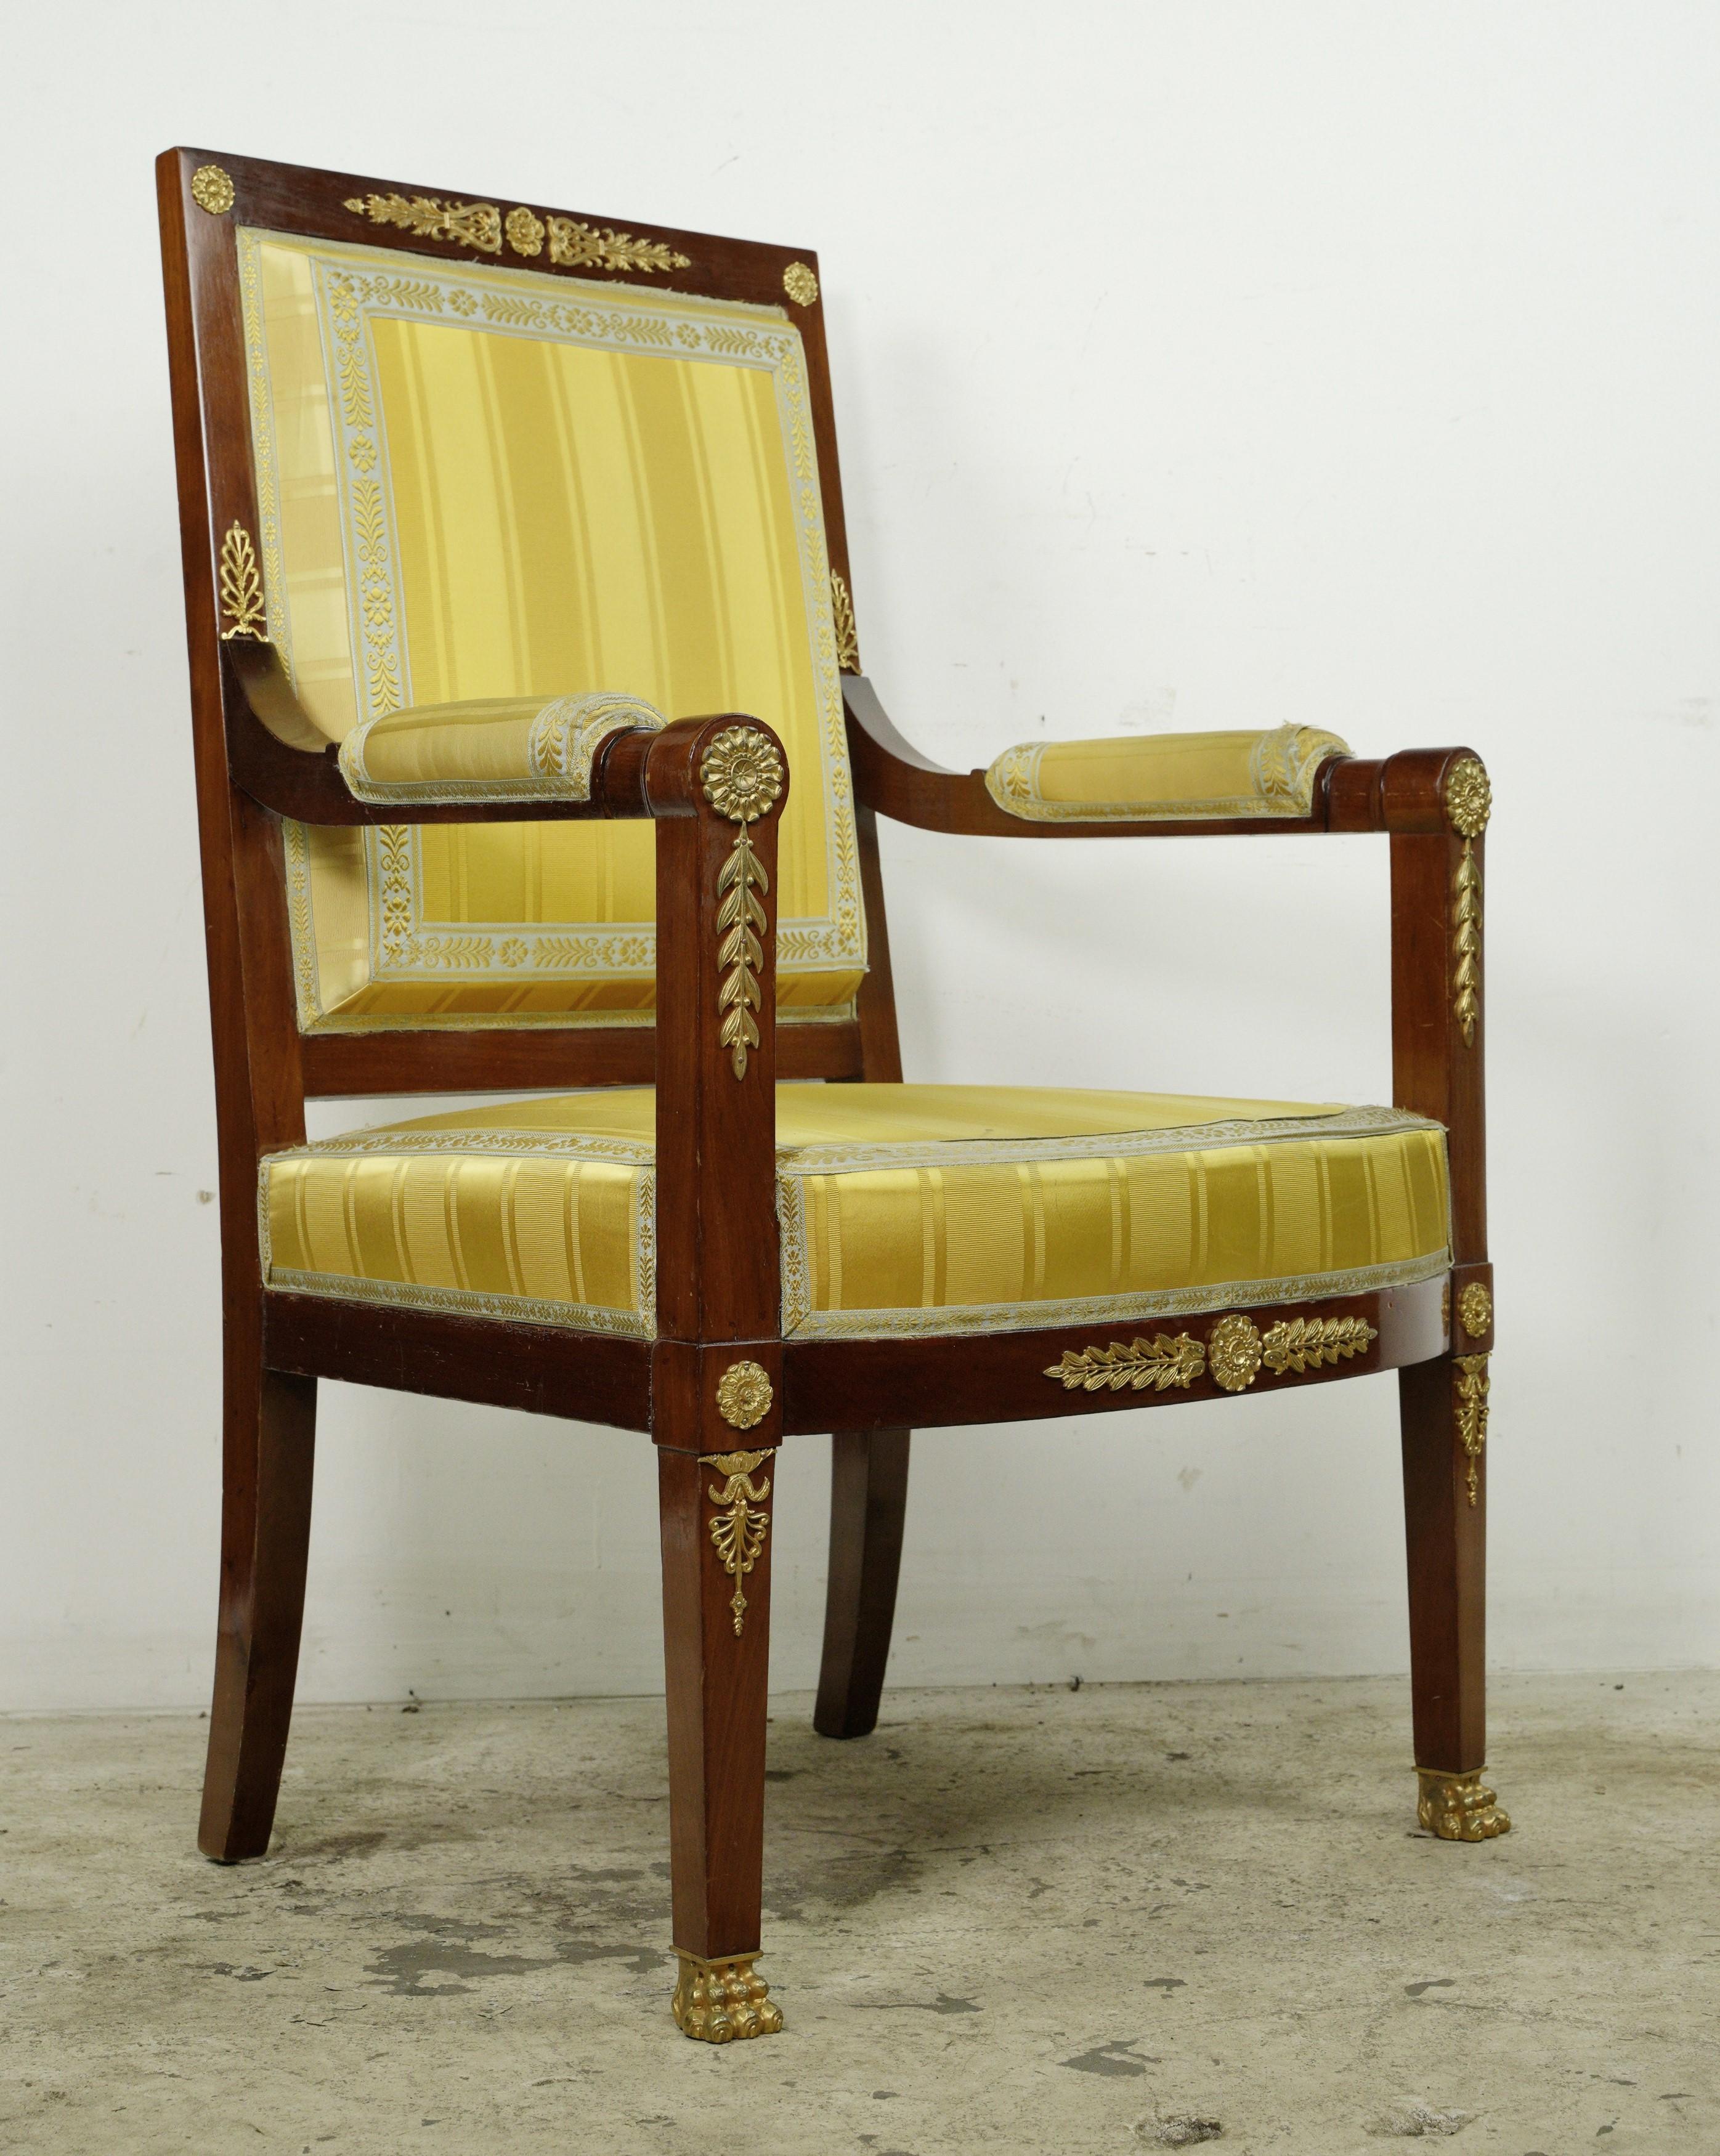 Cette pièce provient d'une succession estimée située à Greenwich, Connecticut. Ce fauteuil présente un cadre en acajou orné d'accents en laiton doré, mettant en valeur des détails complexes de volutes et de feuillages. La tapisserie à rayures jaunes